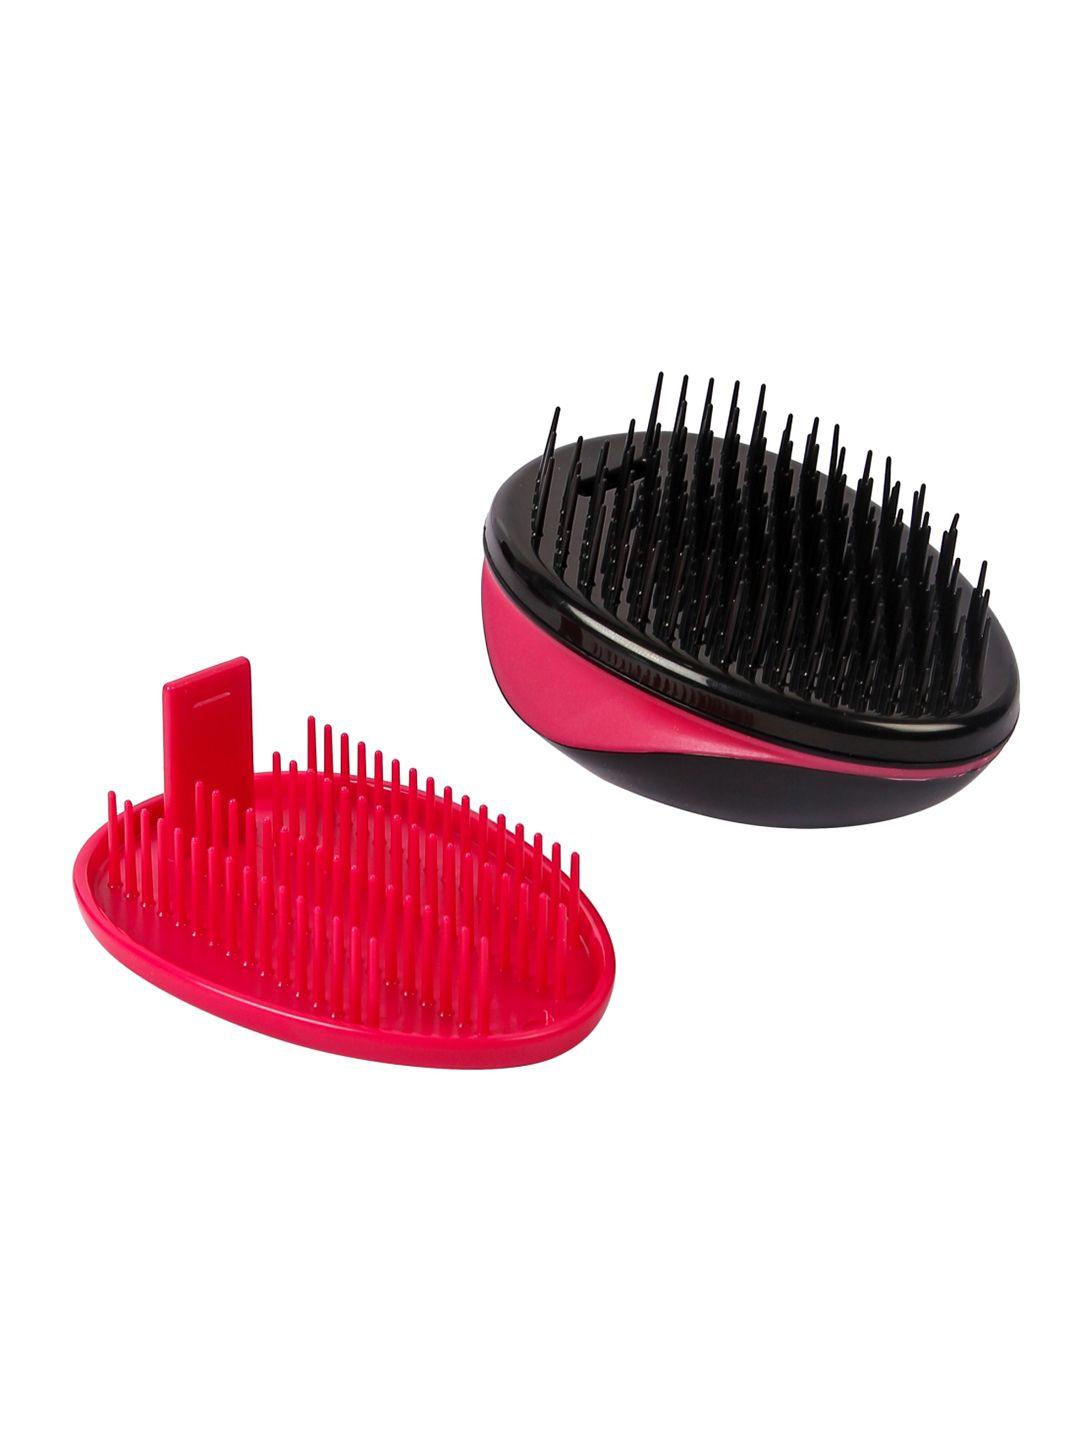 gubb hair detangler hair comb